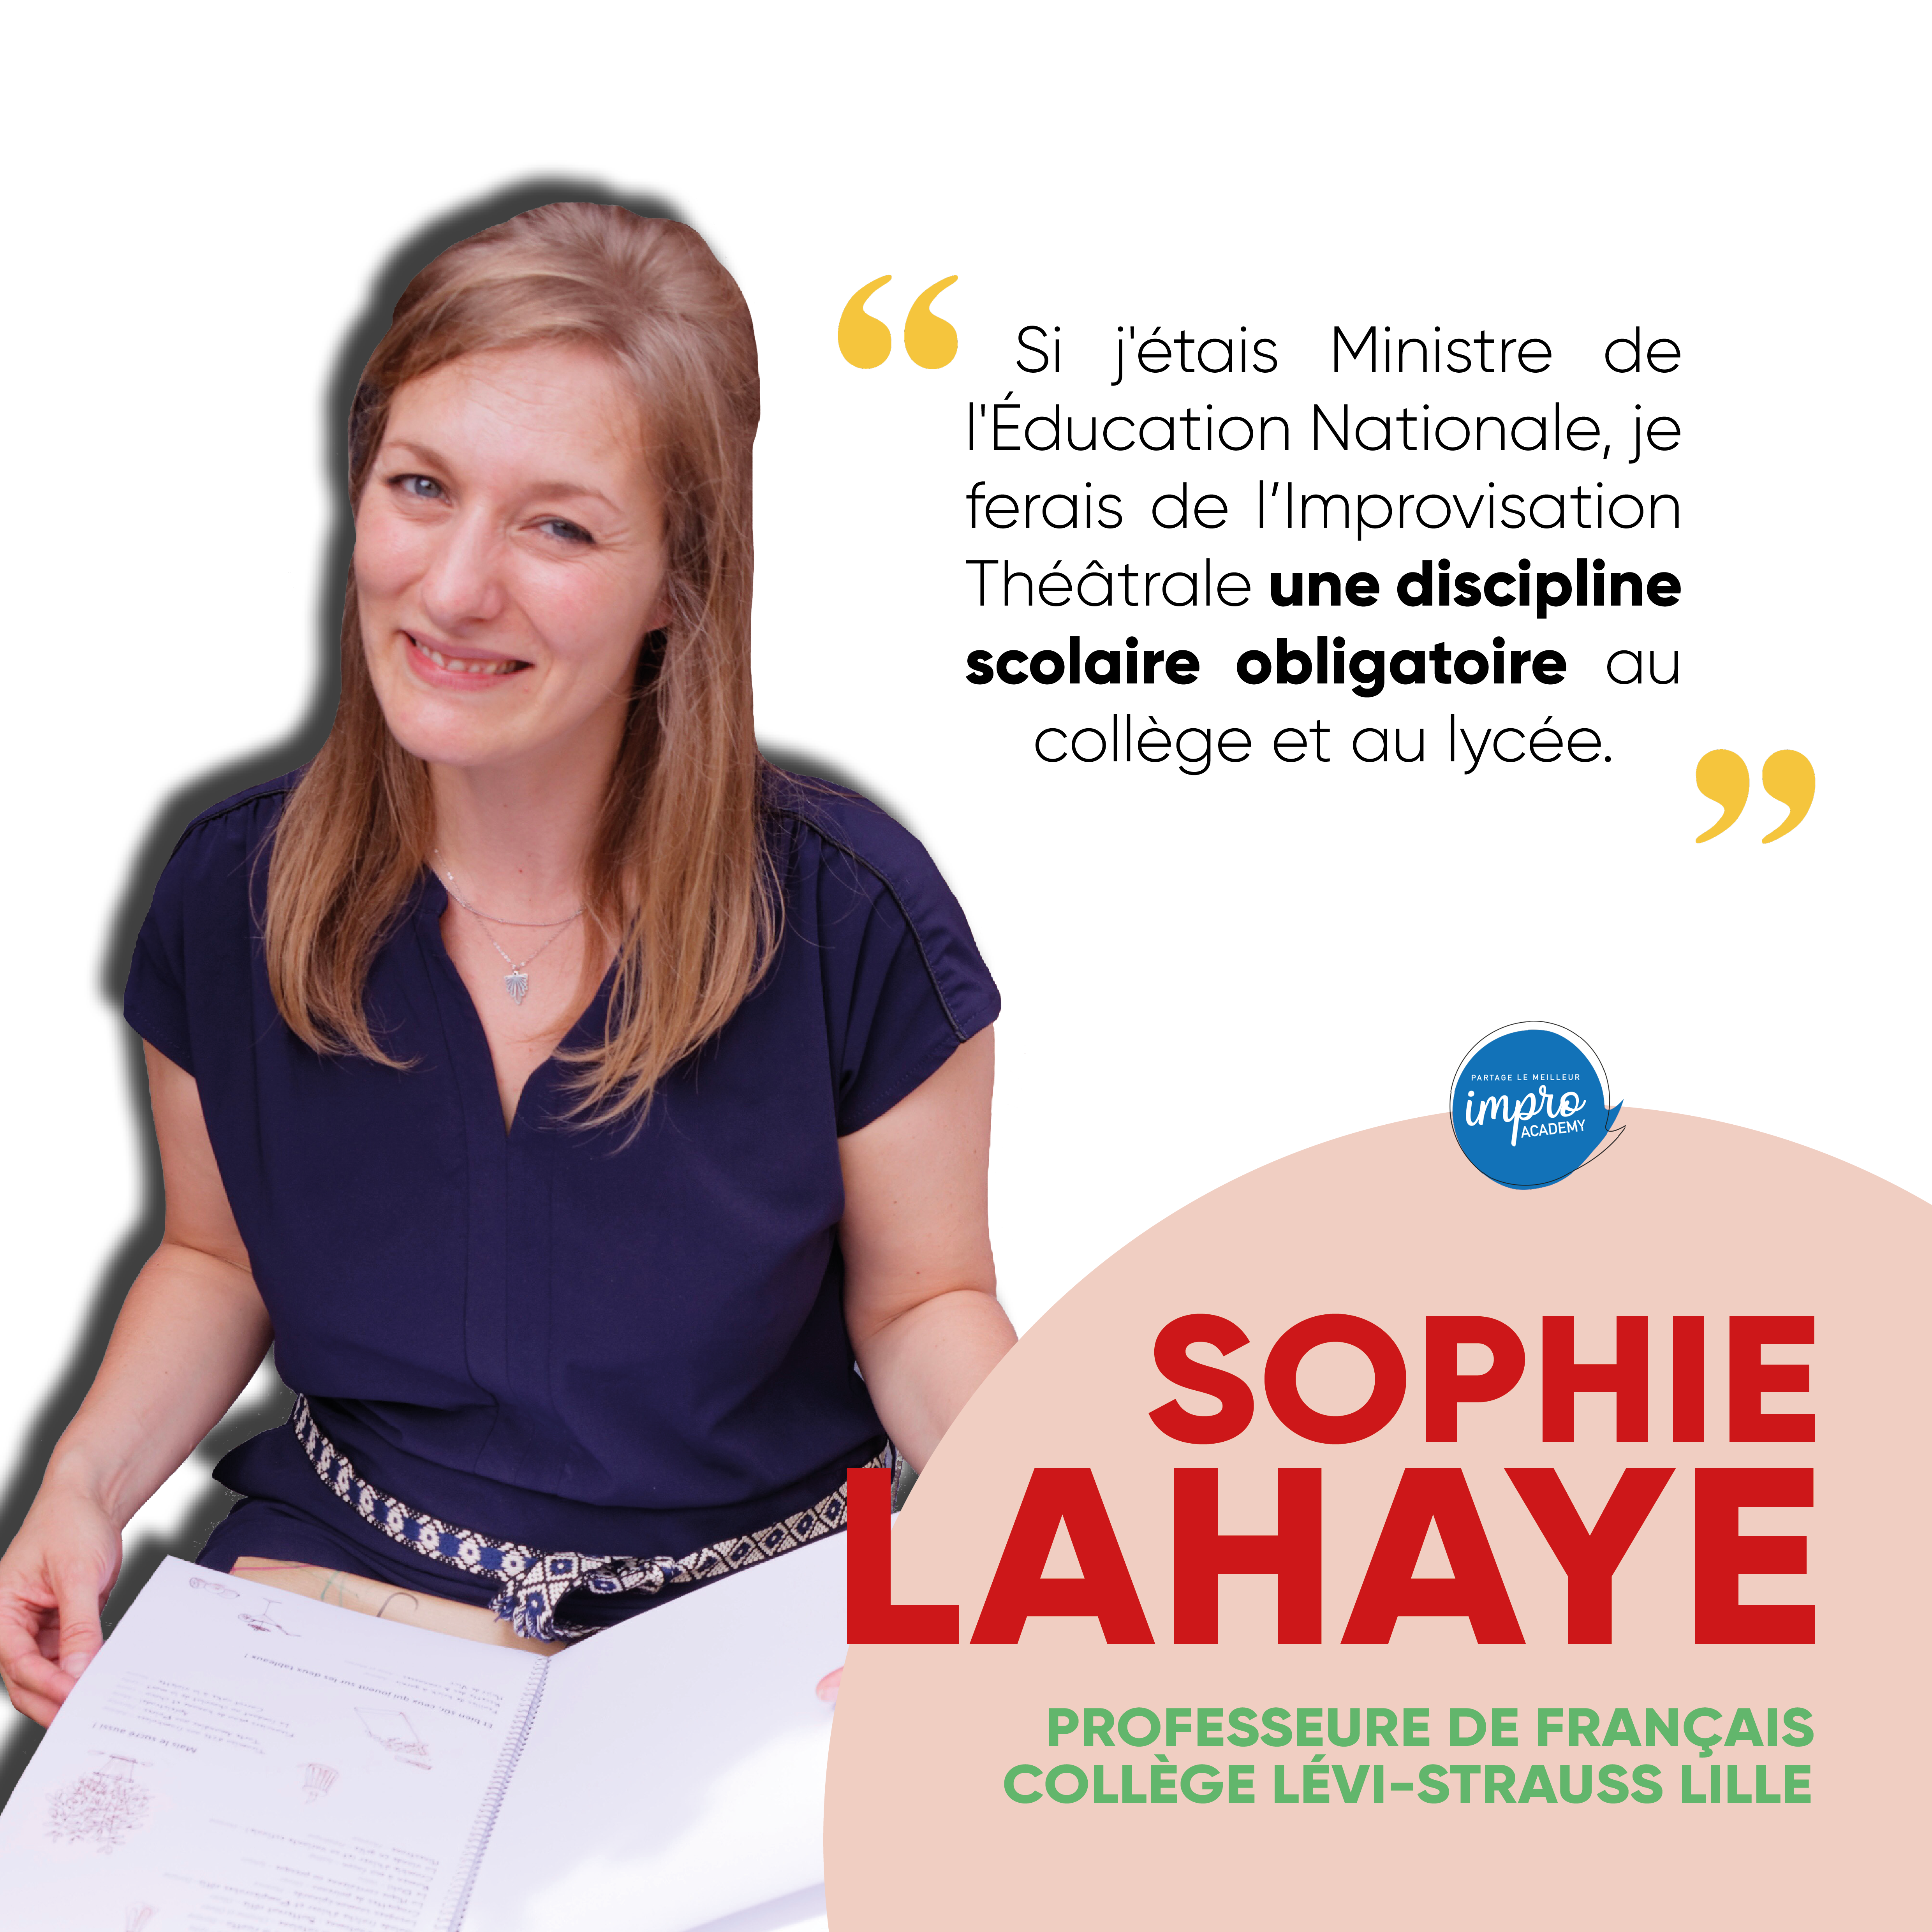 Témoignage #1 - Sophie Lahaye